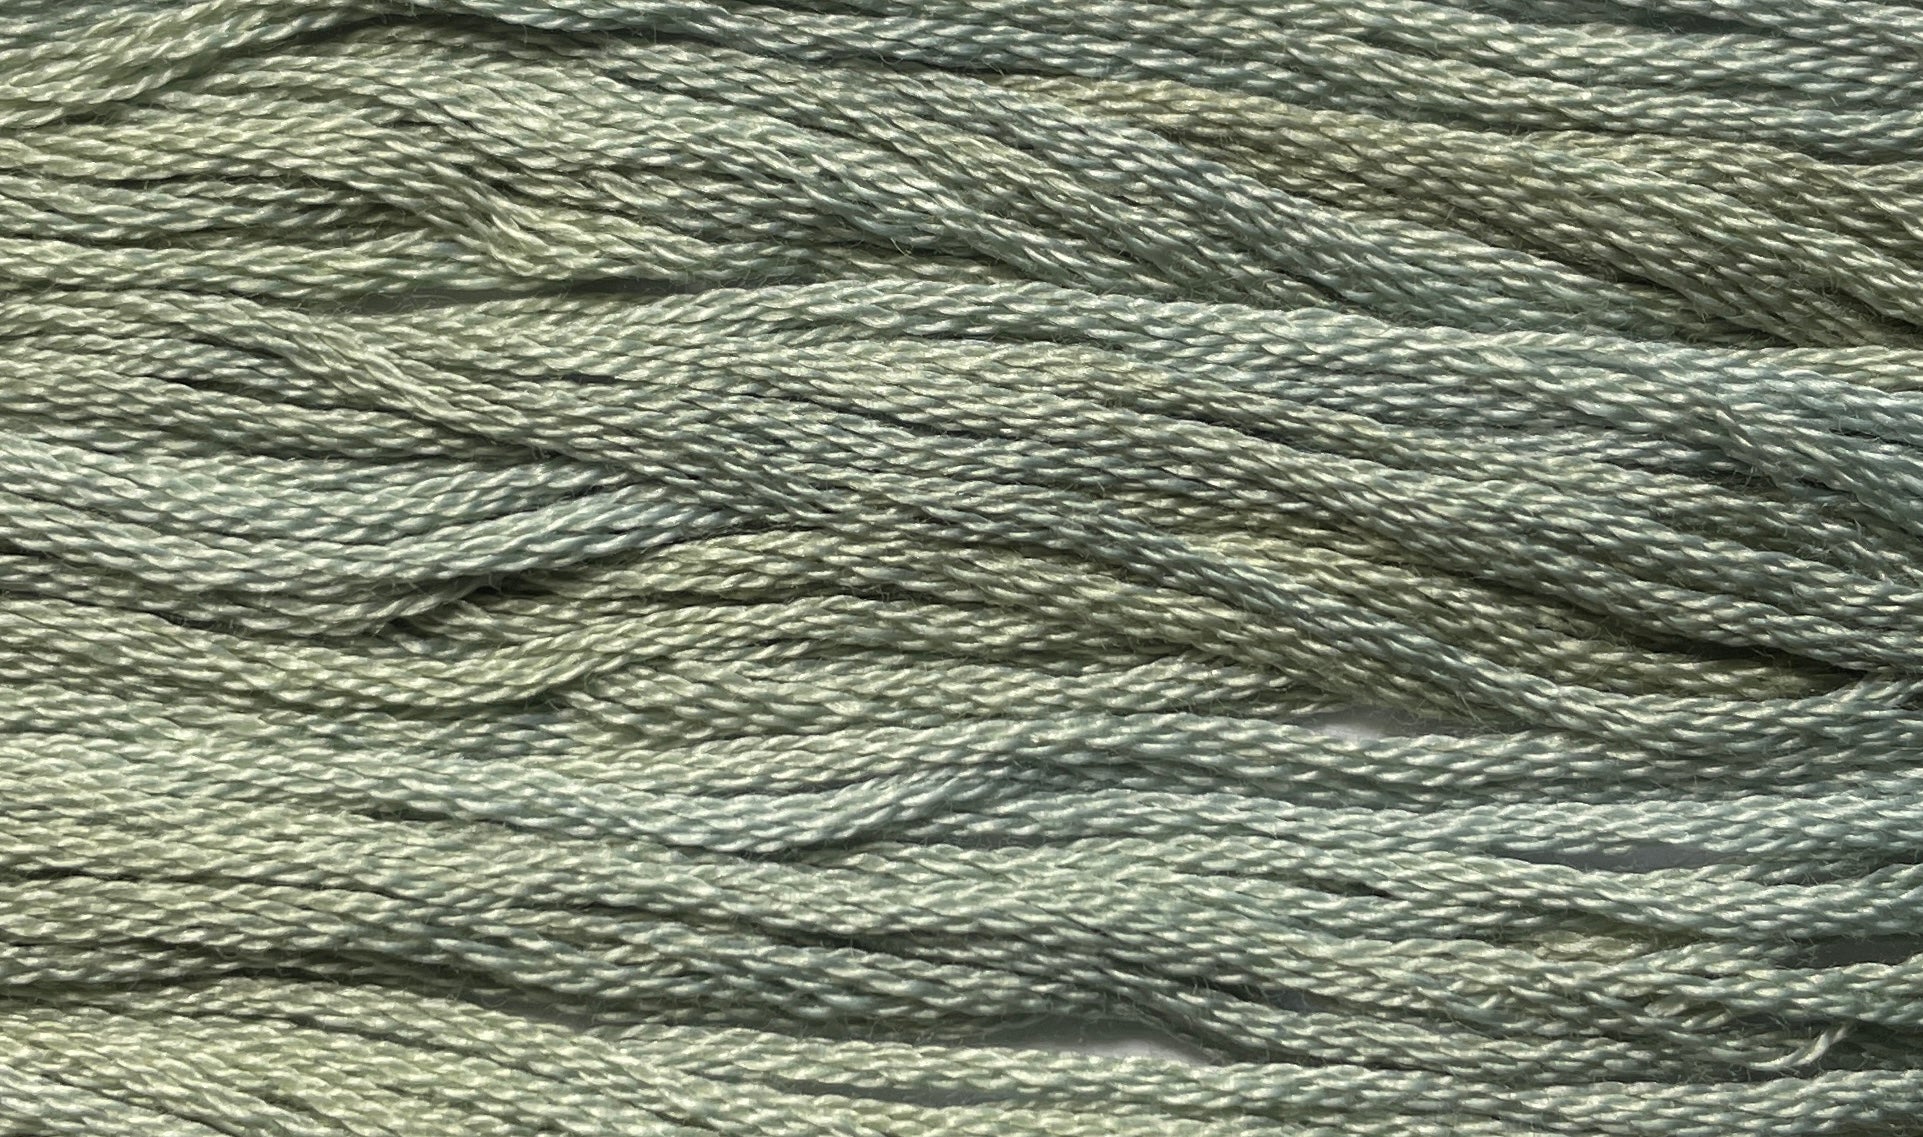 Aged Pewter - Gentle Arts Cotton Thread - 5 yard Skein - Cross Stitch Floss, Thread & Floss, Thread & Floss, The Crafty Grimalkin - A Cross Stitch Store